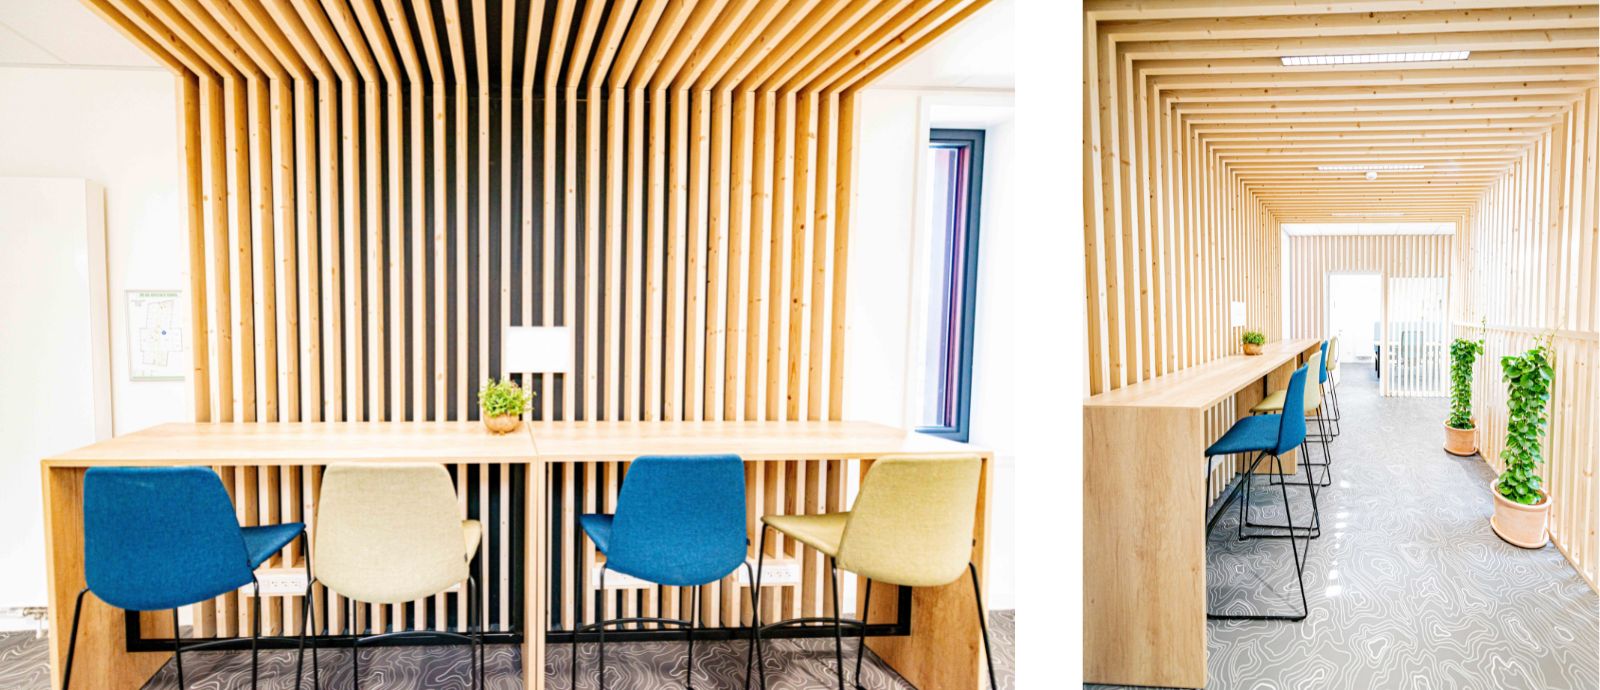 Espace de coworking à Clisson dans le batiment Alter Eco, mobilier coloré et bois